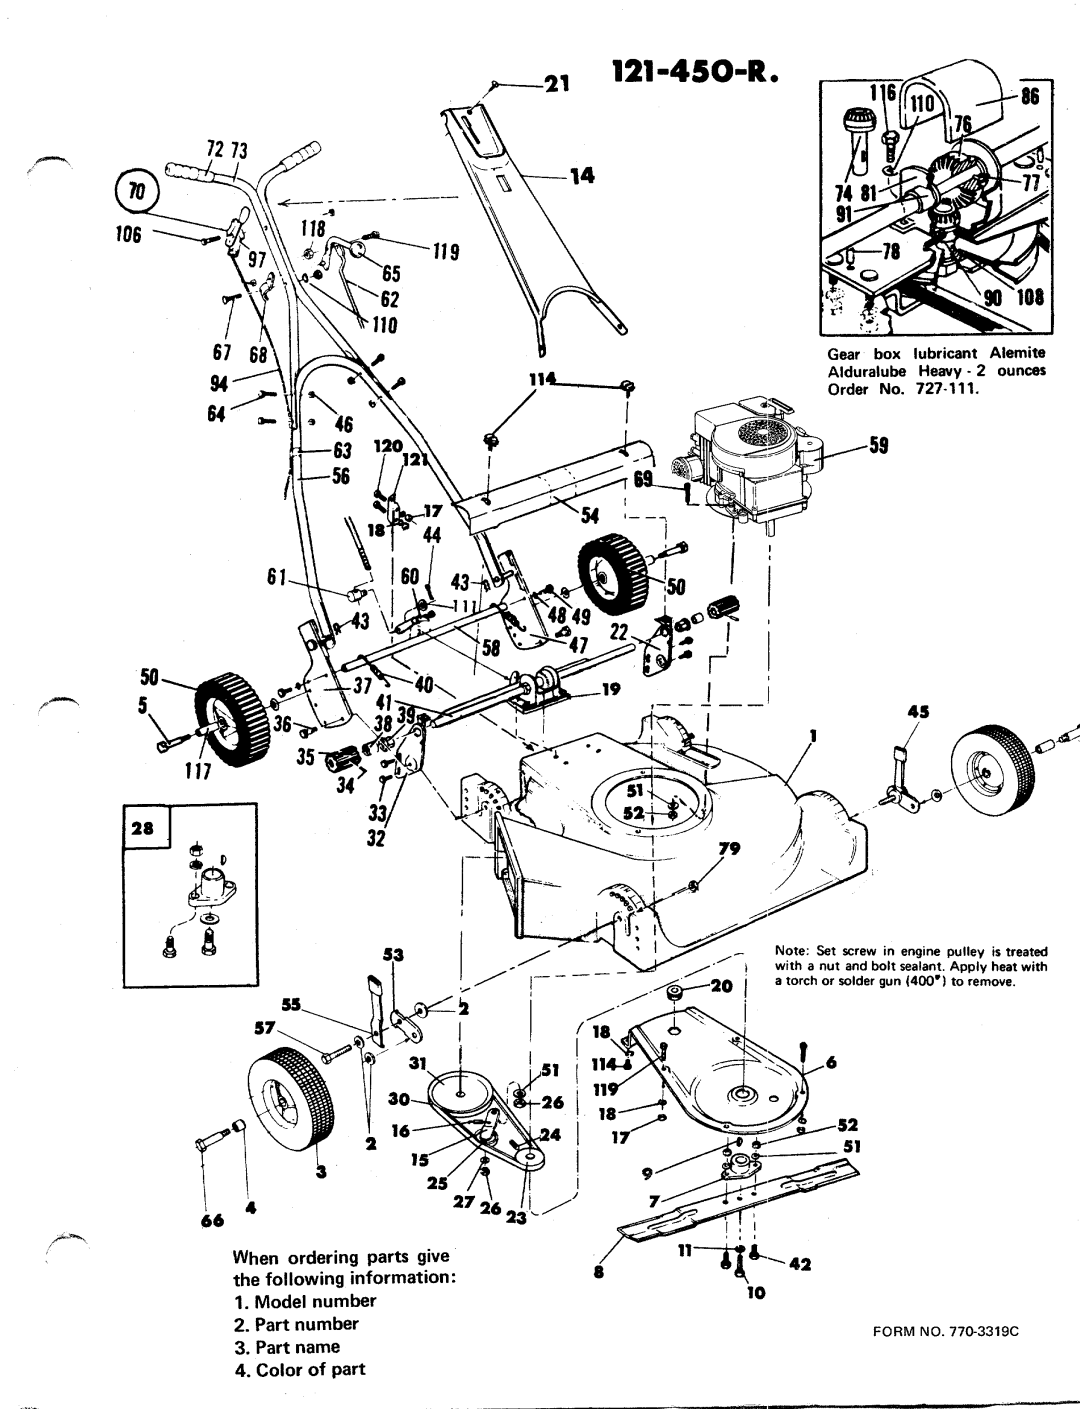 MTD 121-450-R manual 